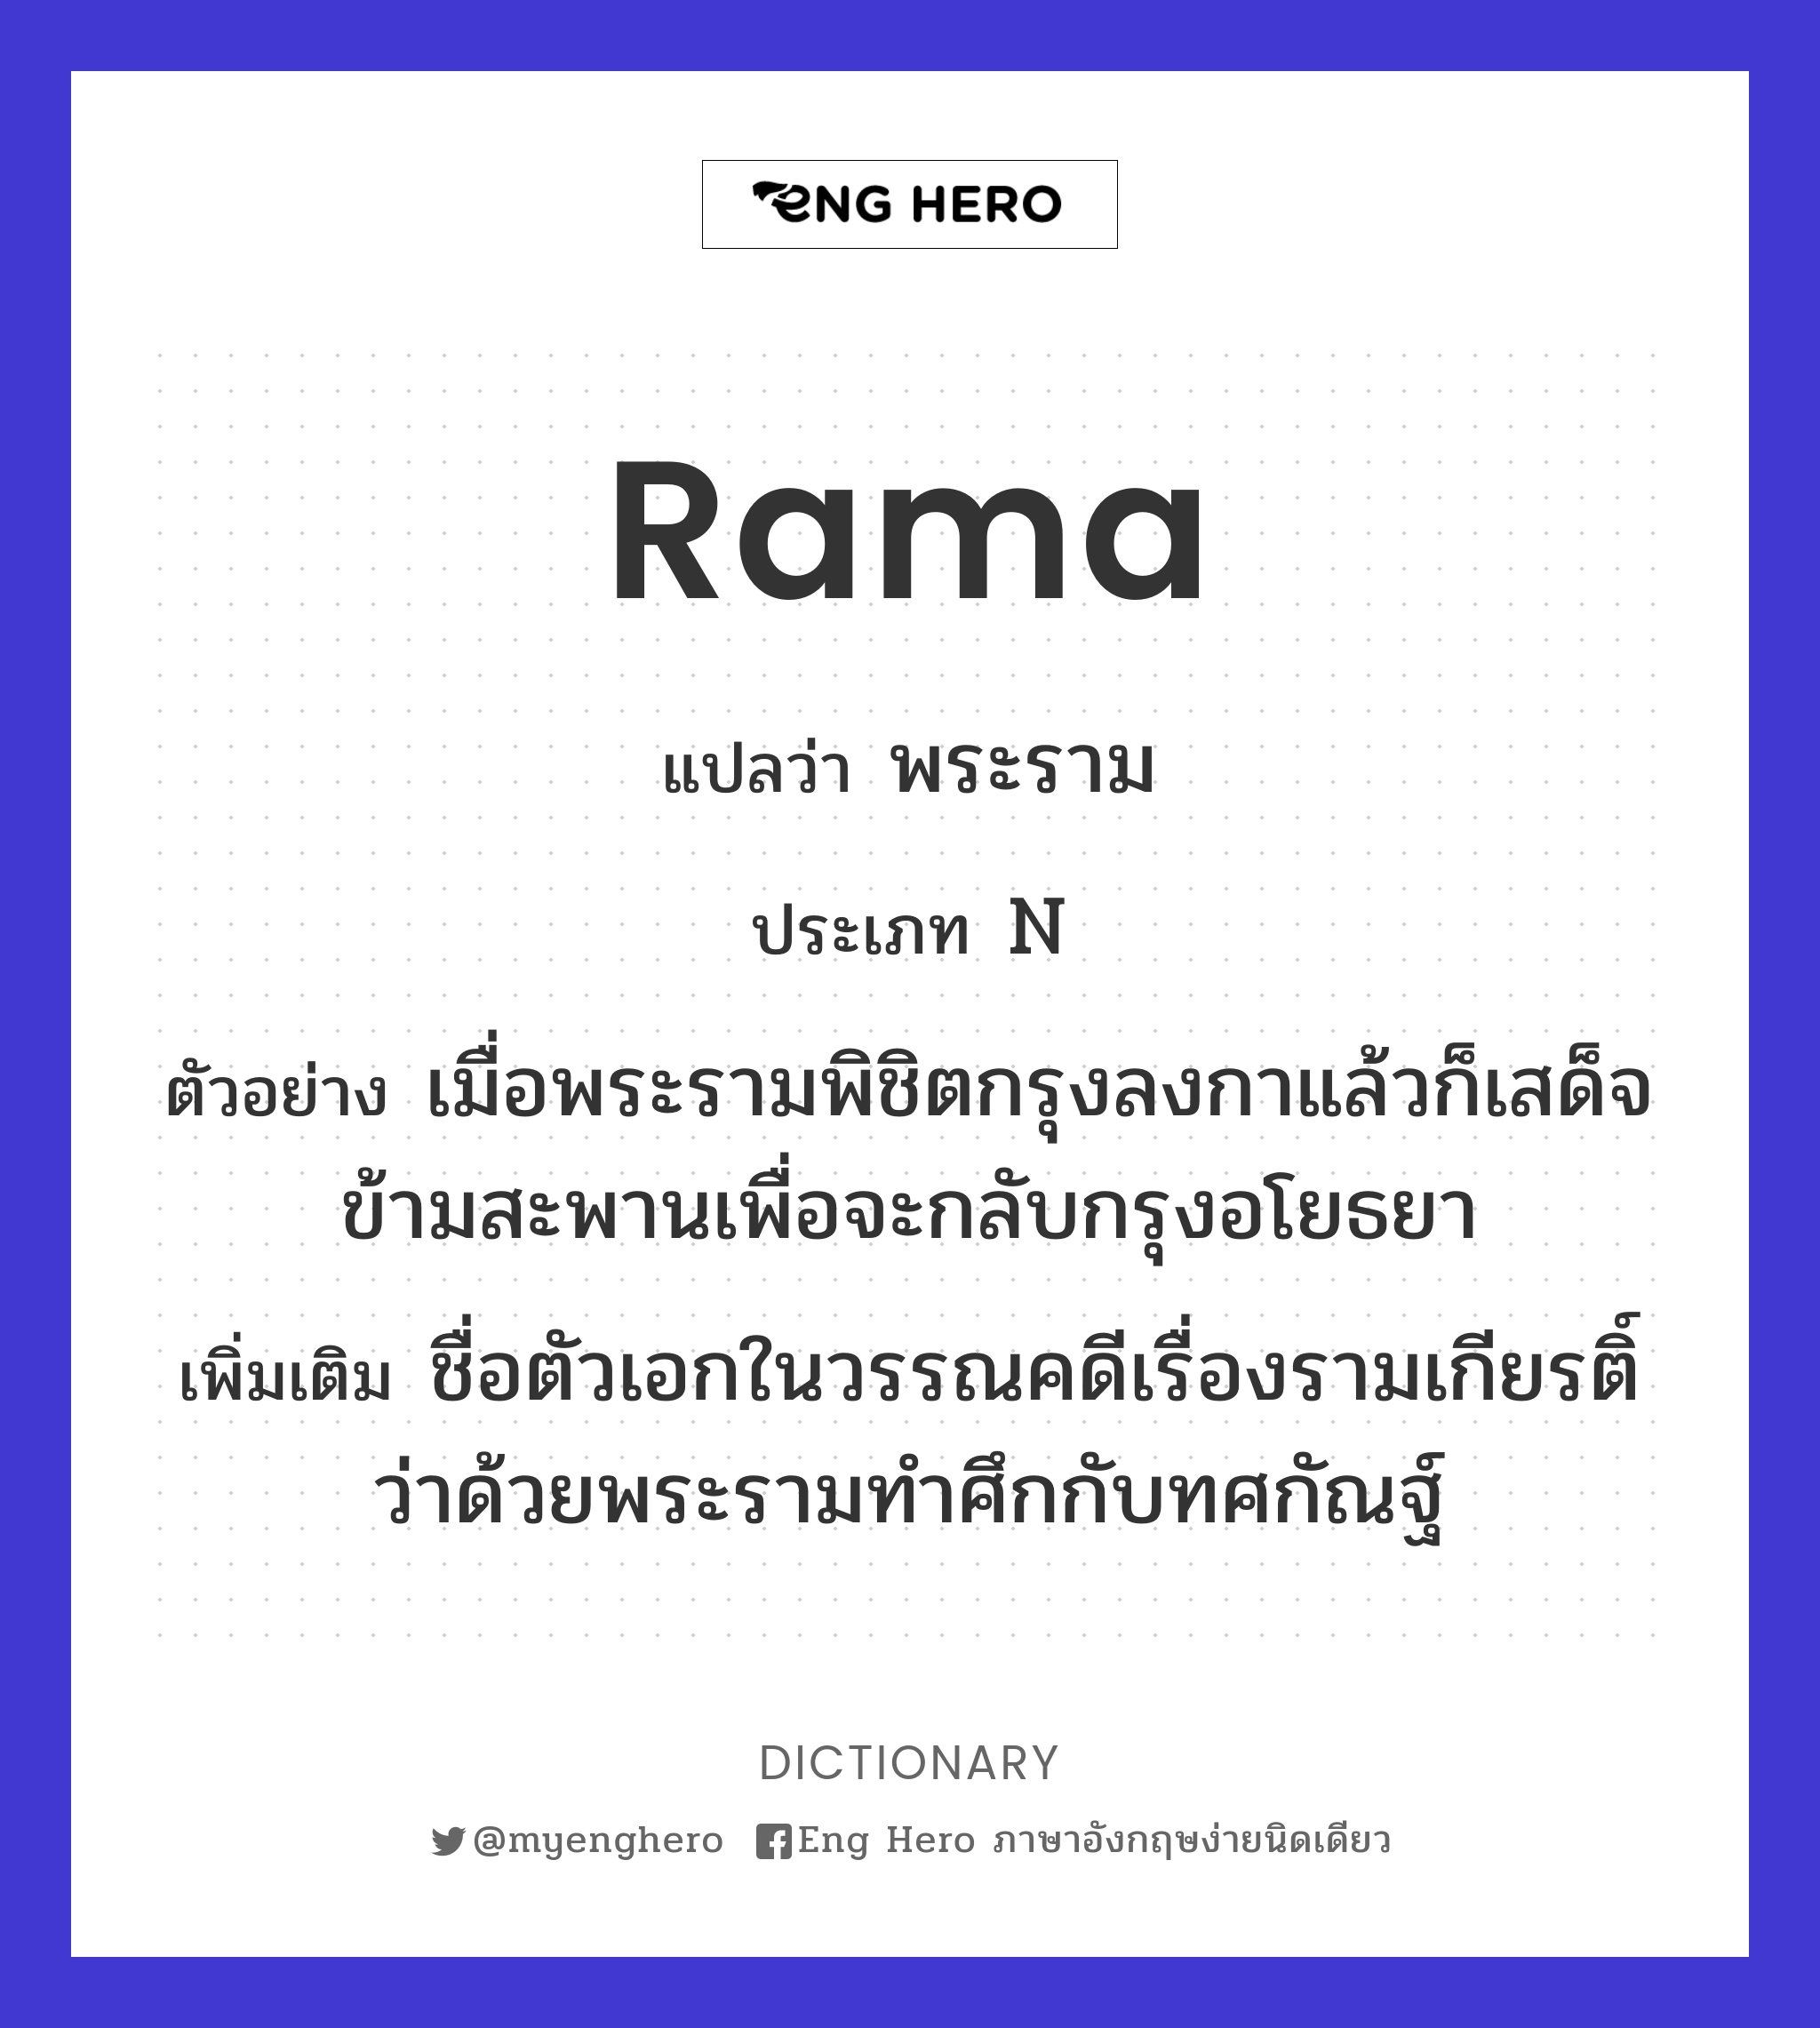 Rama